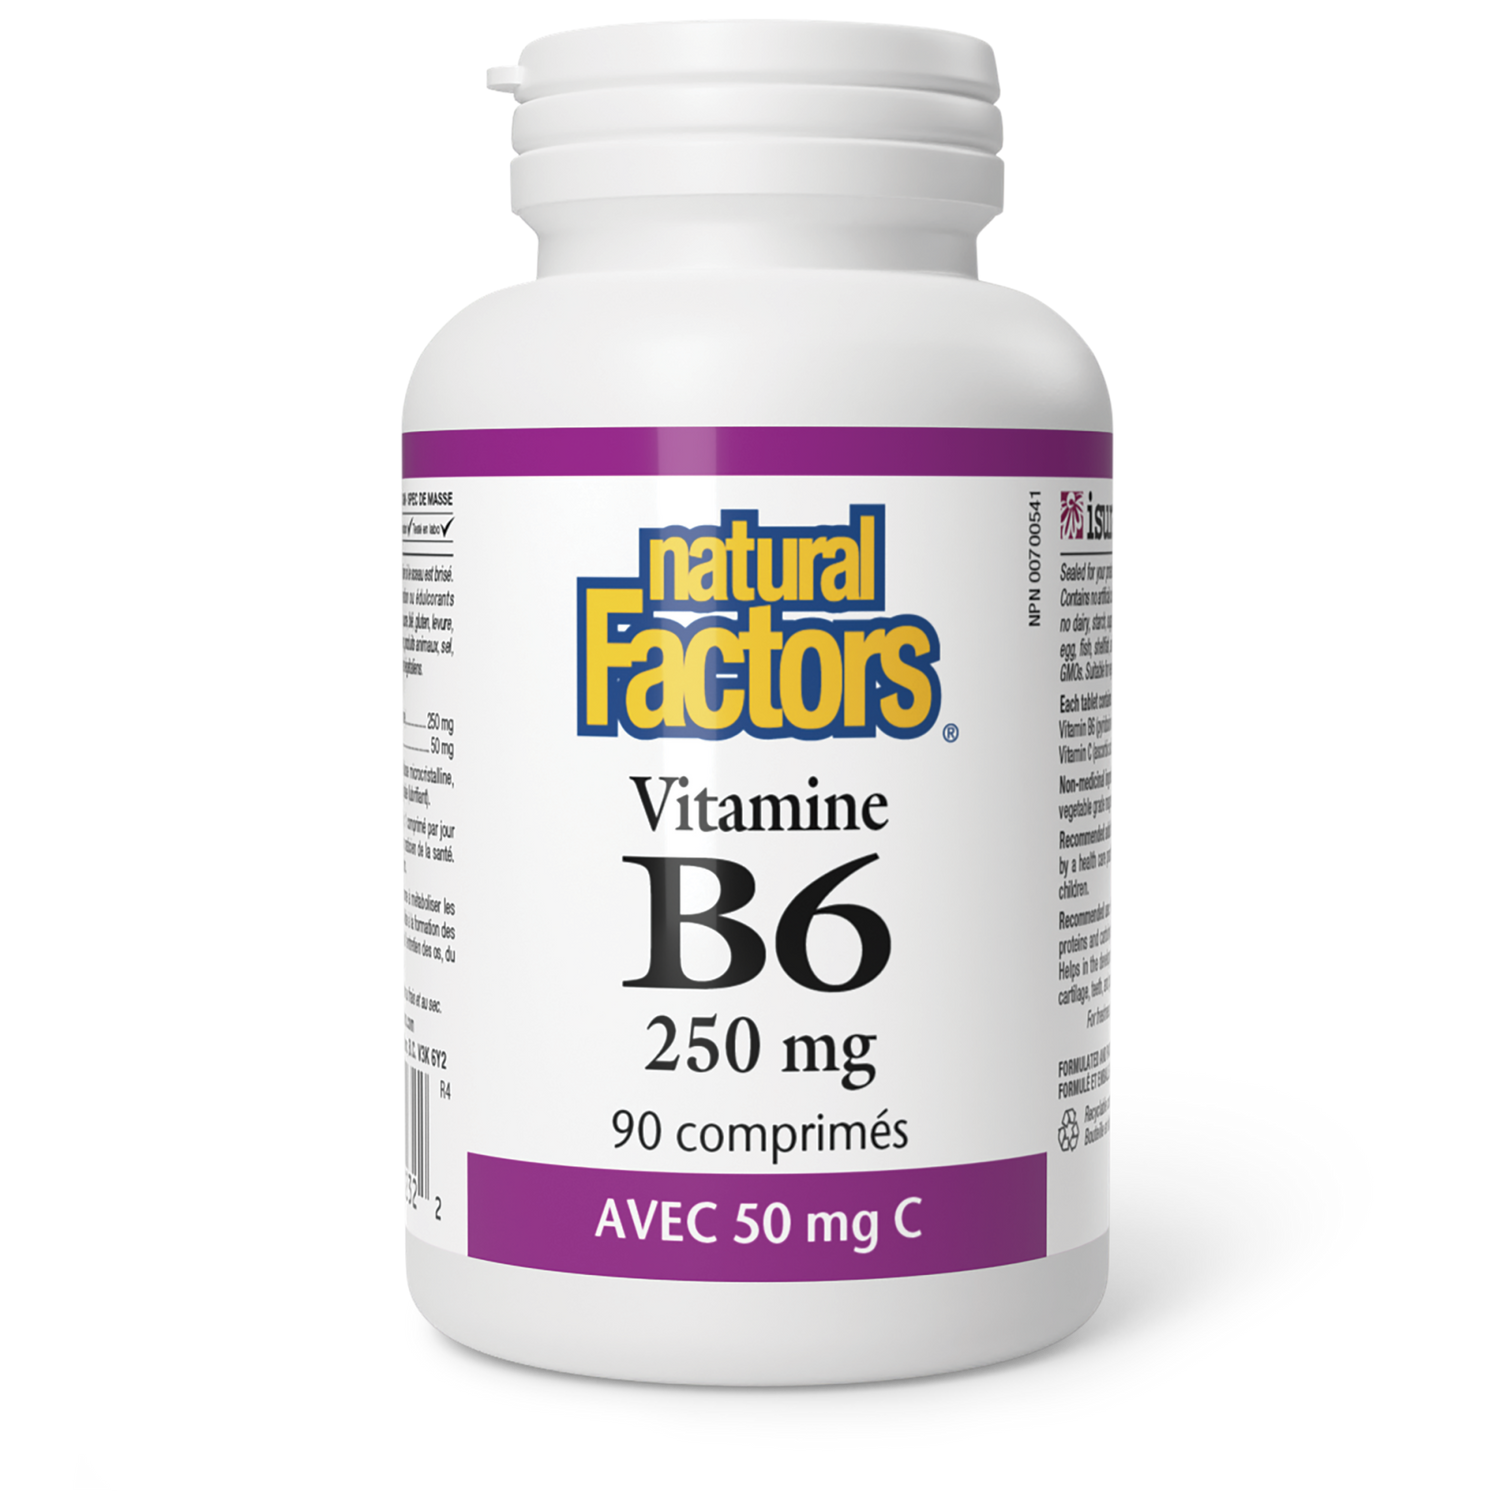 Vitamine B6 250 mg avec 50 mg C, Natural Factors|v|image|1232